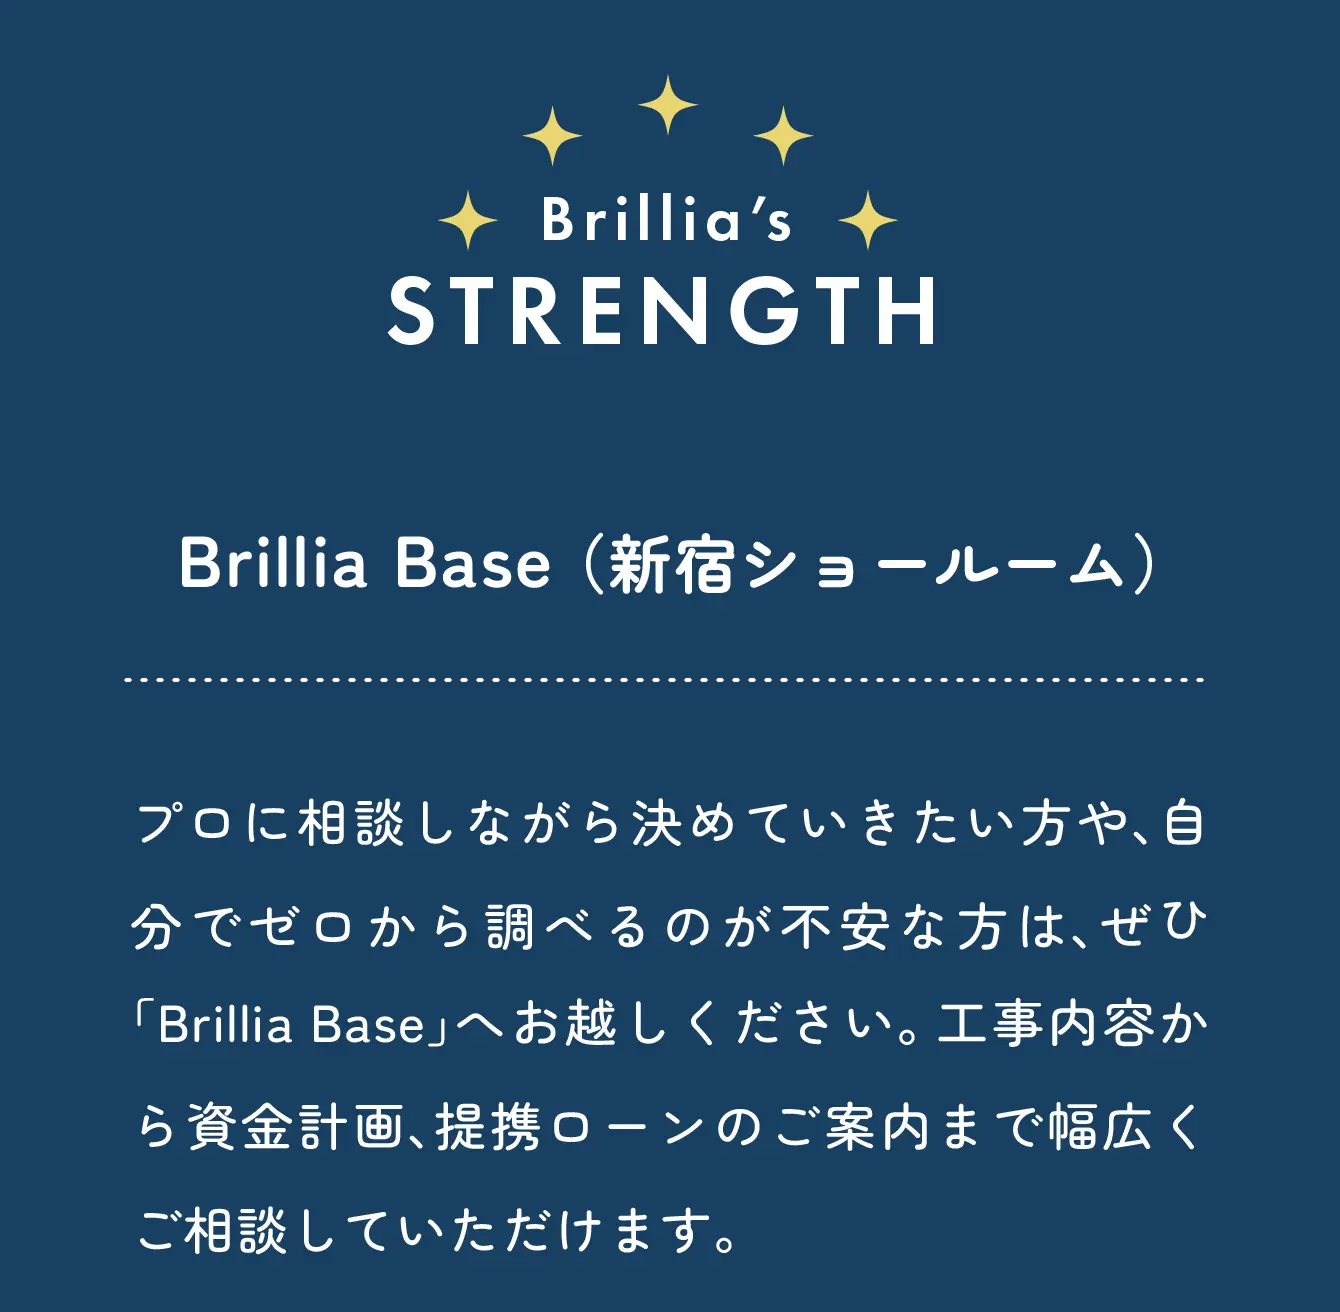 Brillia's strength Brillia Base 新宿ショールーム